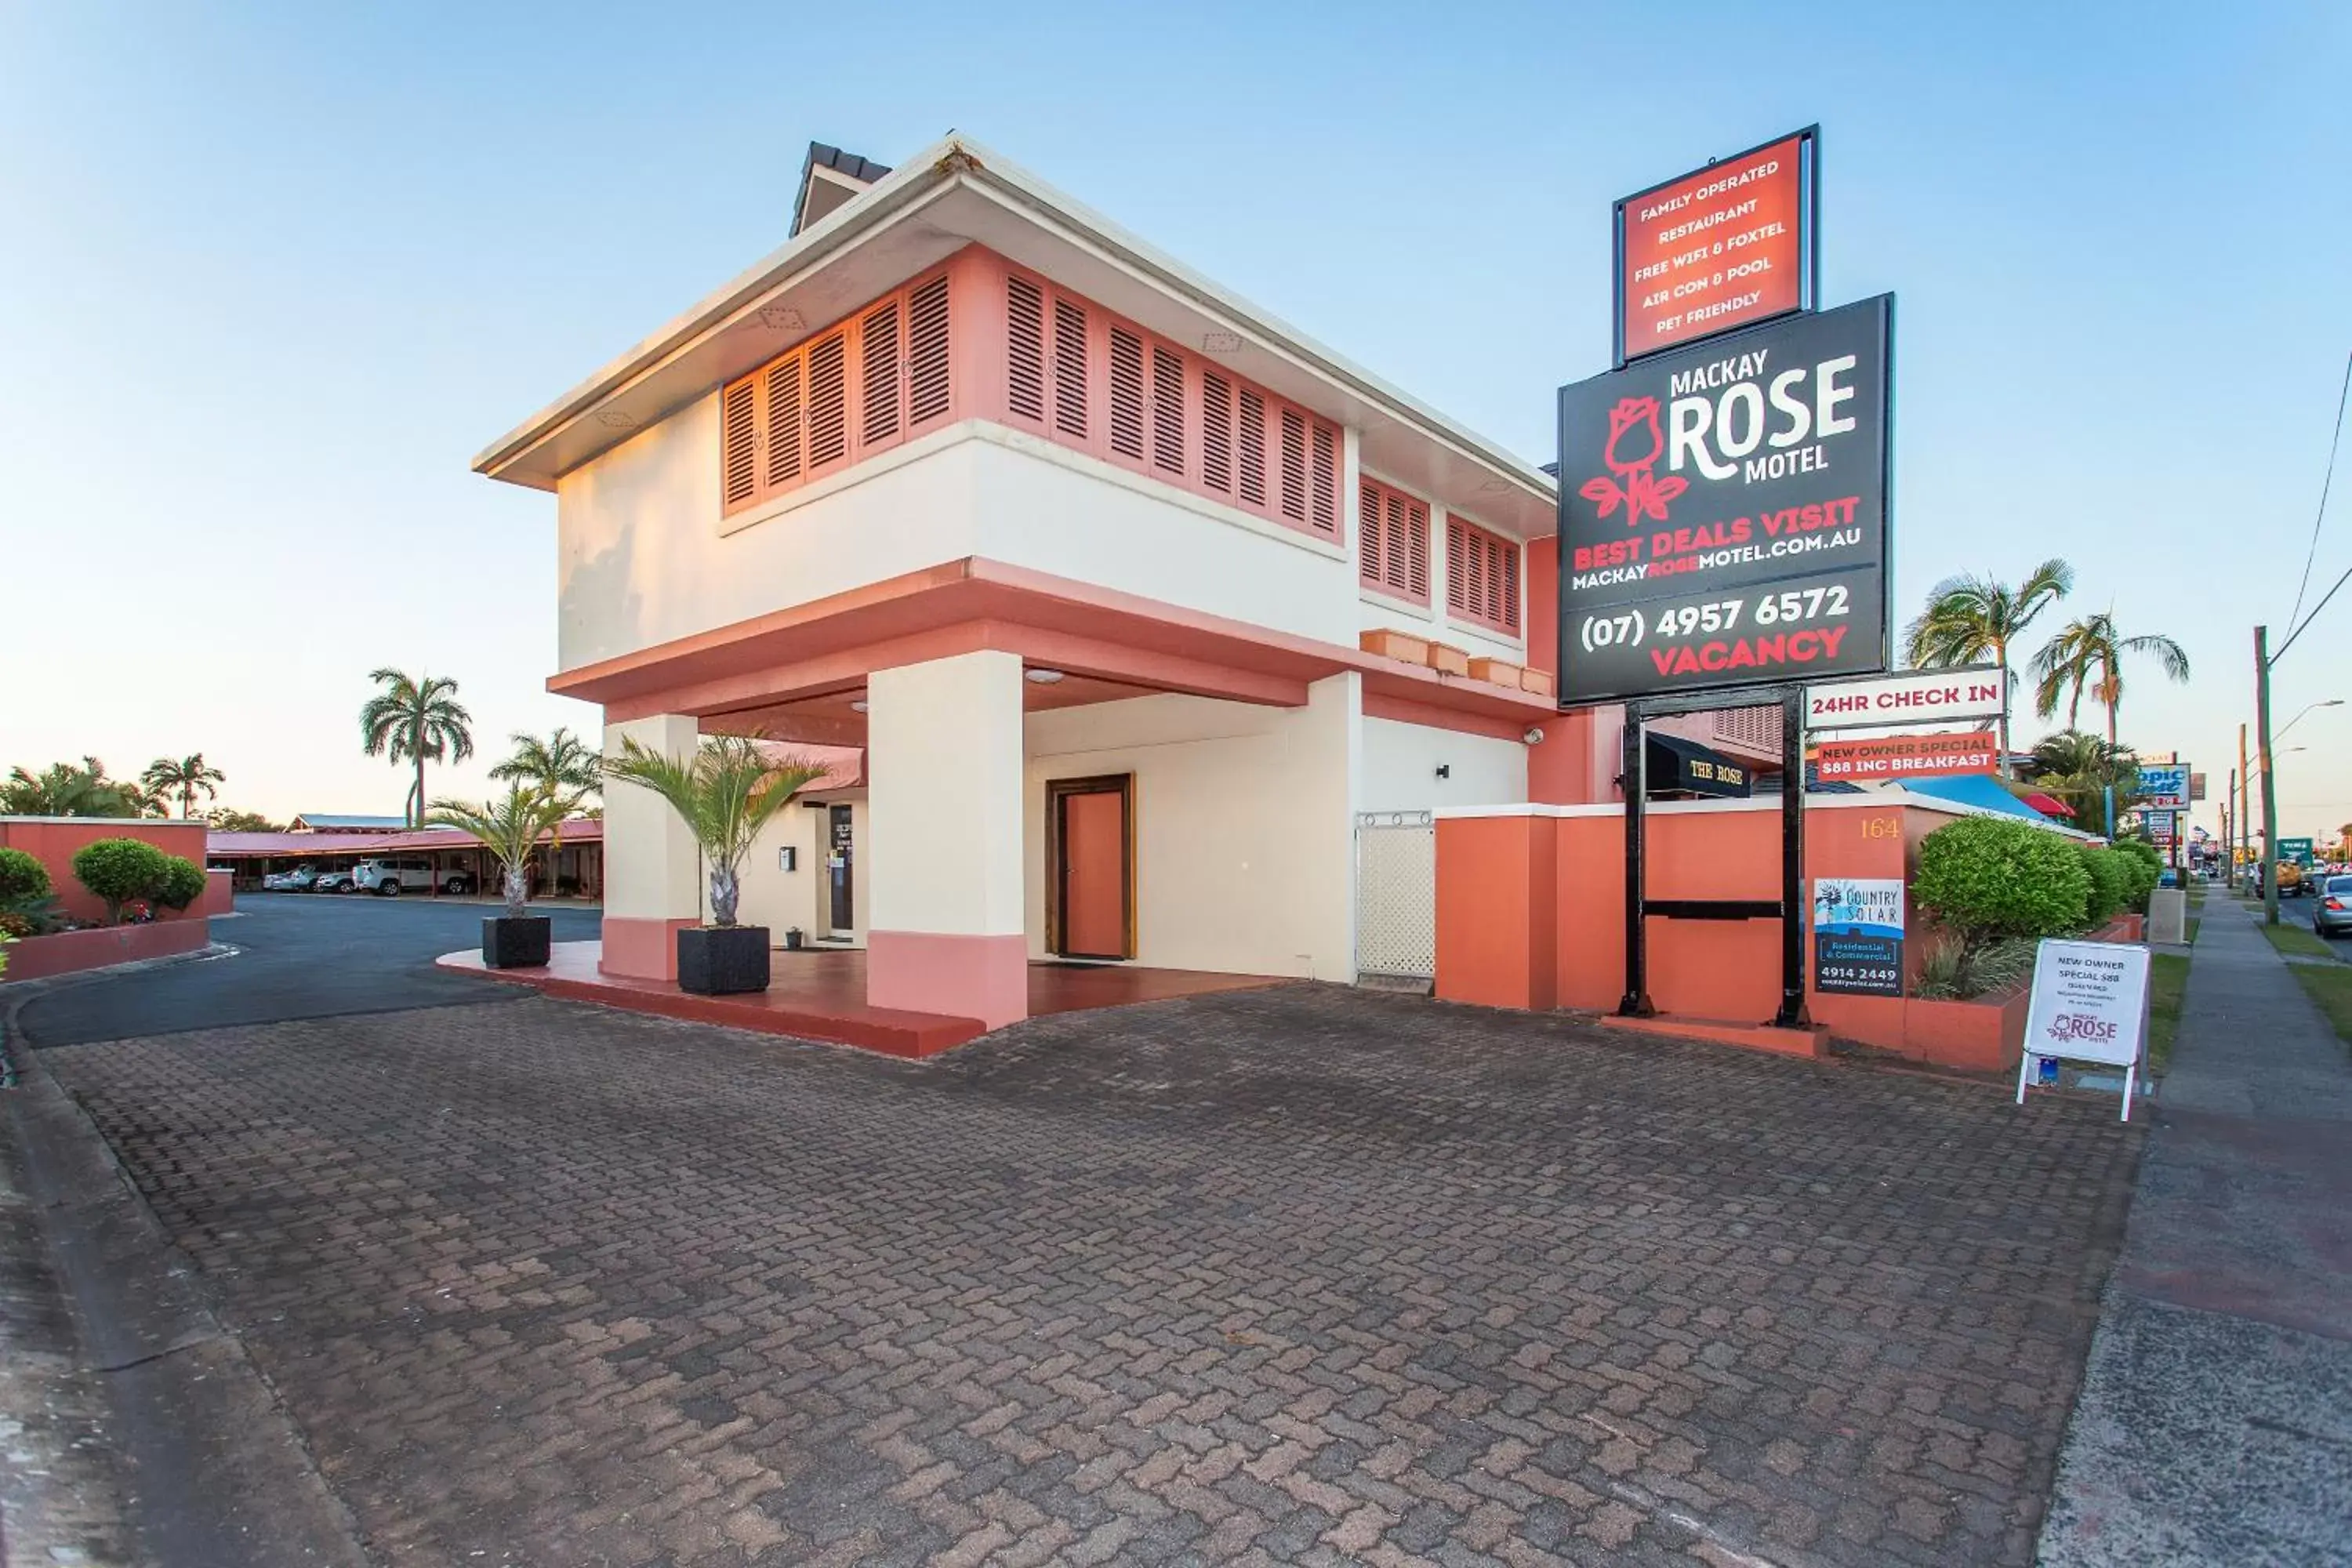 Facade/entrance, Property Building in Mackay Rose Motel